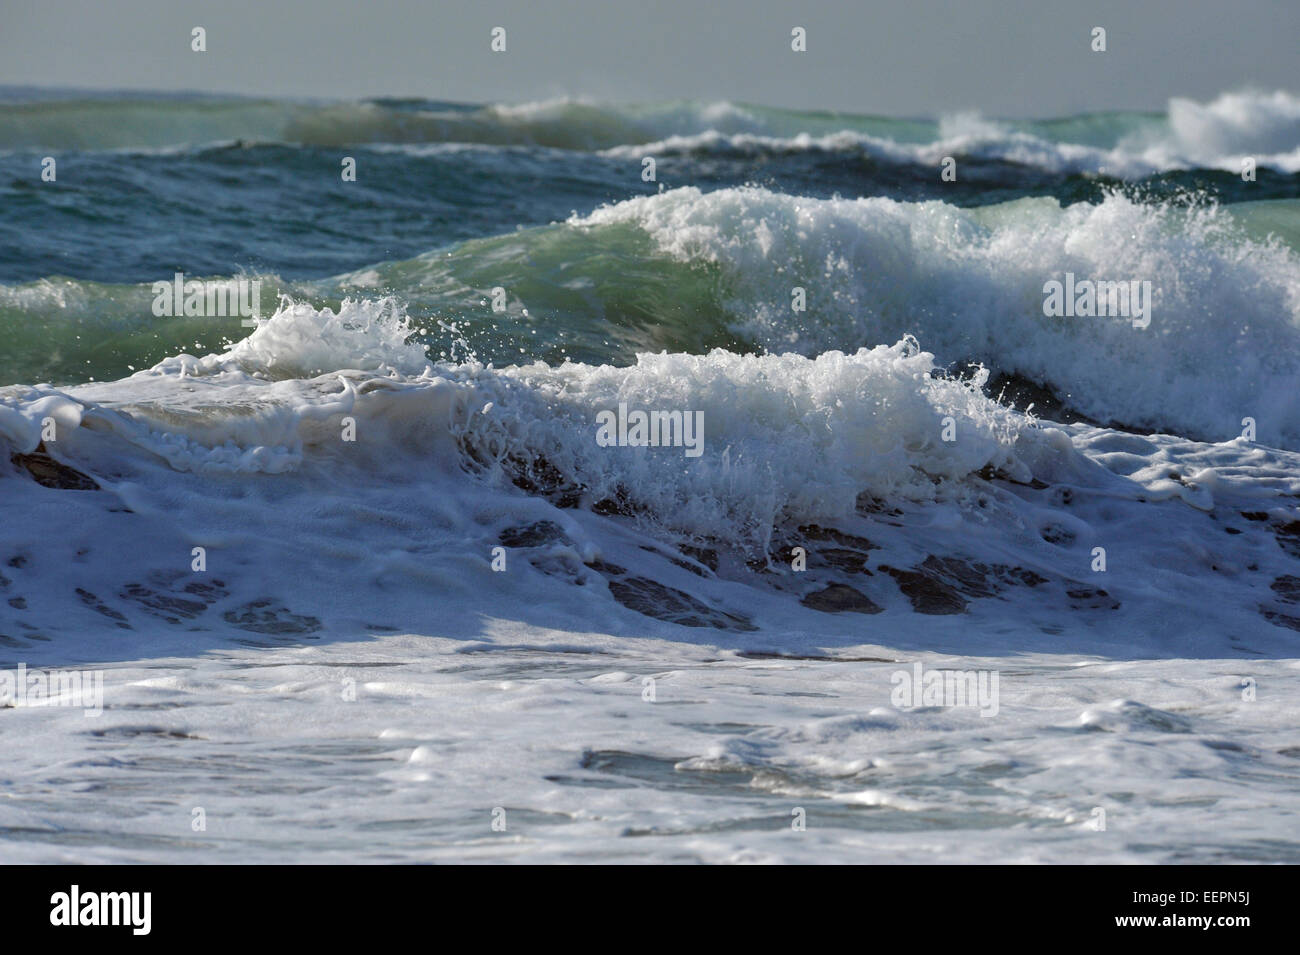 Welle, Landschaft, Seeseite, Durban, KwaZulu-Natal, Südafrika, energiereiche Wellen, spritzender weißer Schaum Stockfoto